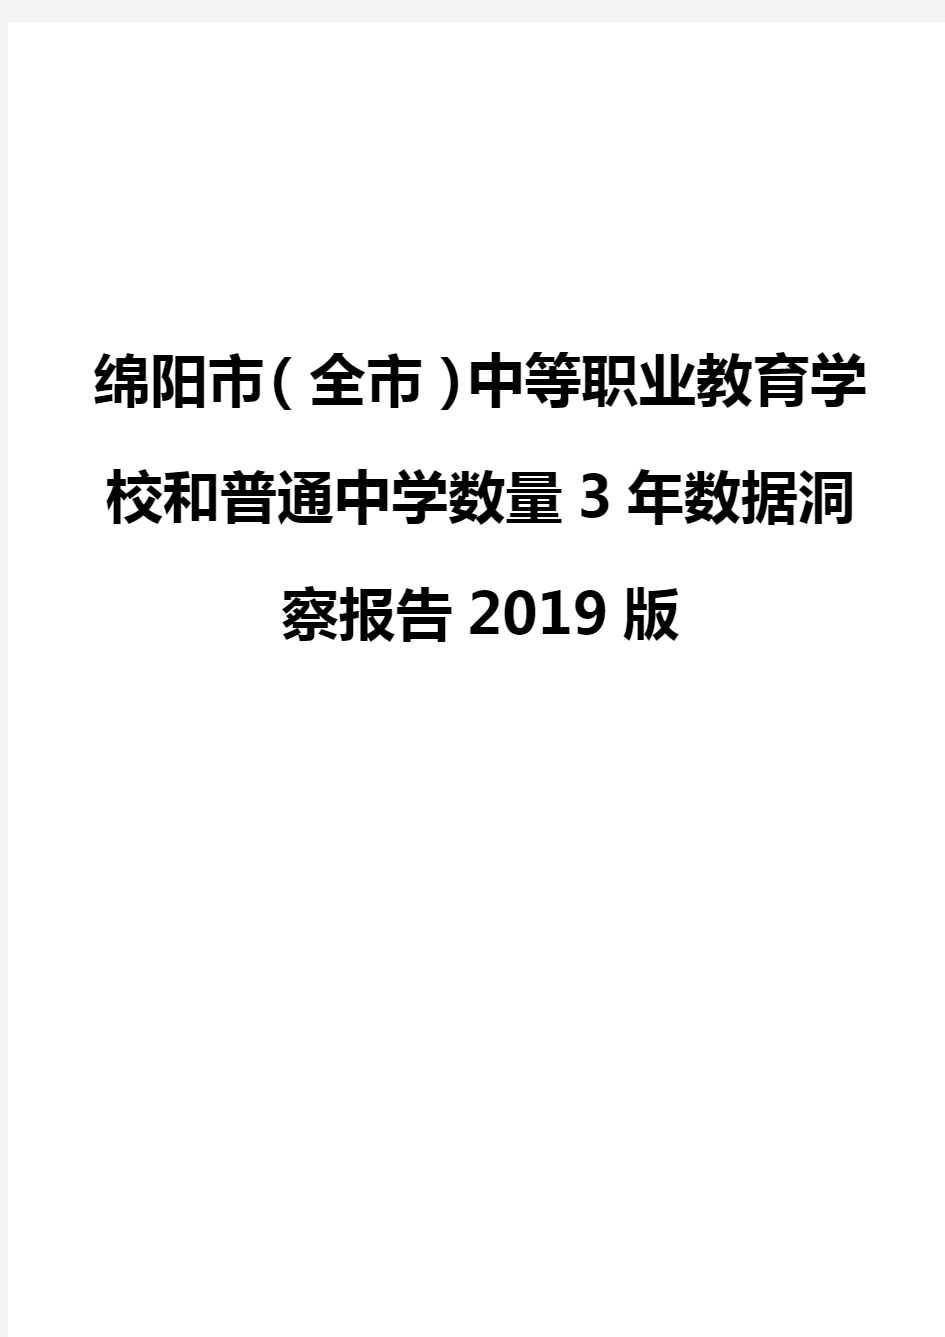 绵阳市(全市)中等职业教育学校和普通中学数量3年数据洞察报告2019版